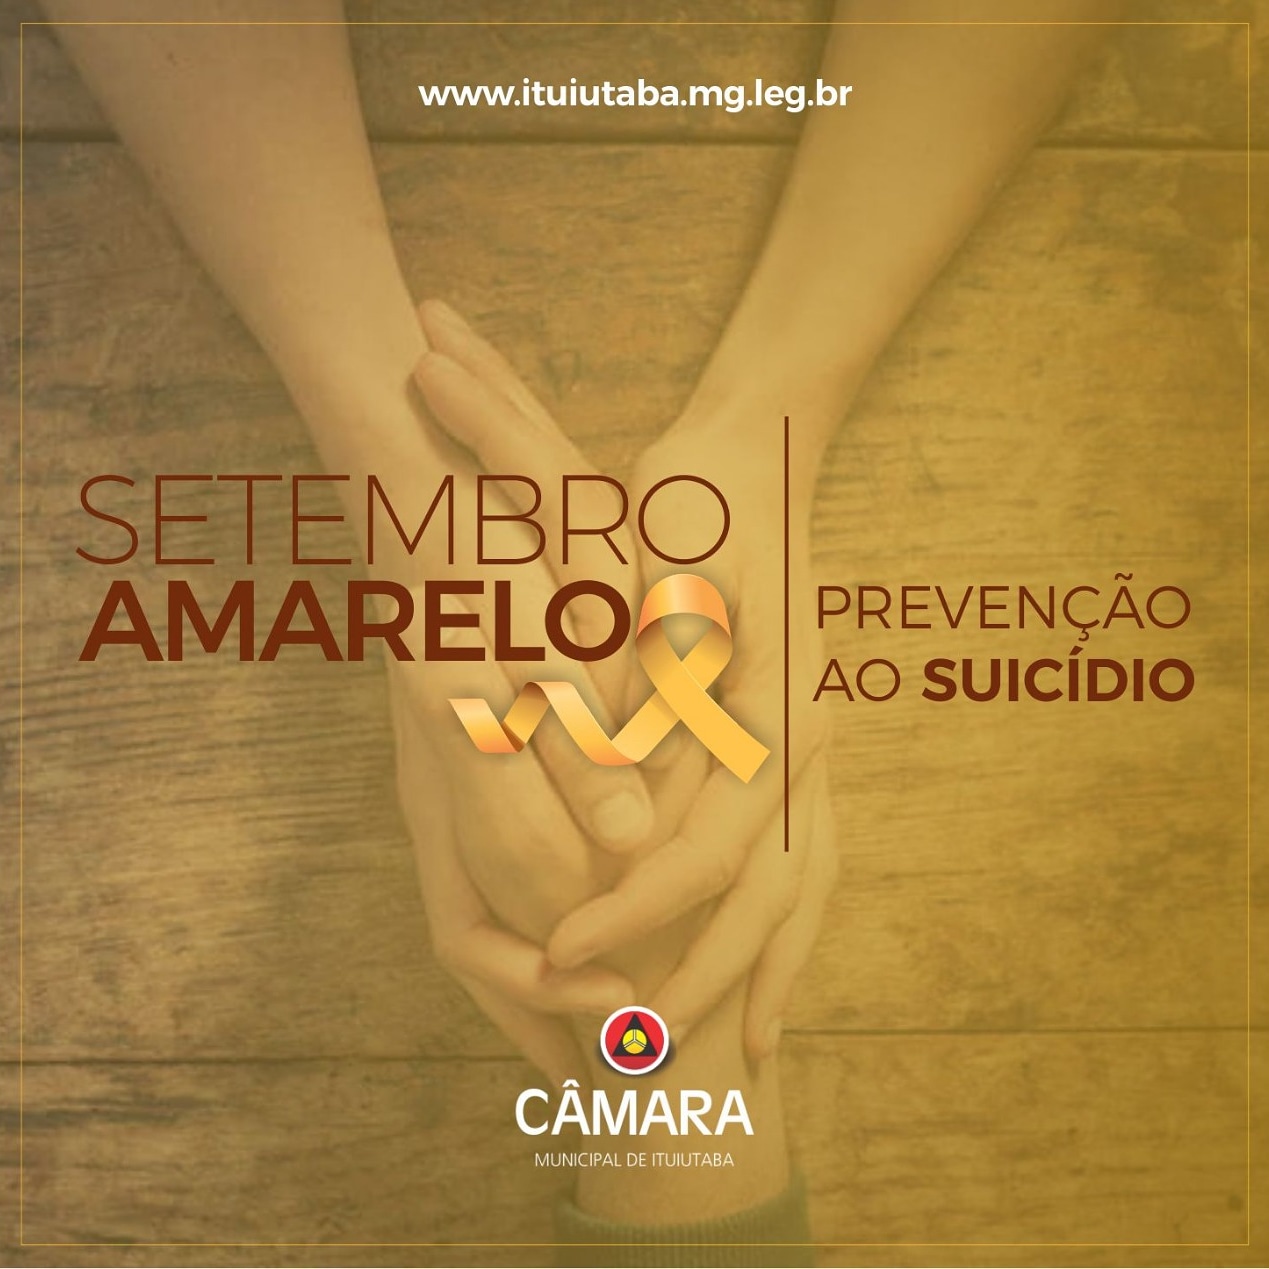 Setembro Amarelo, uma campanha de conscientização e prevenção contra o suicídio. 